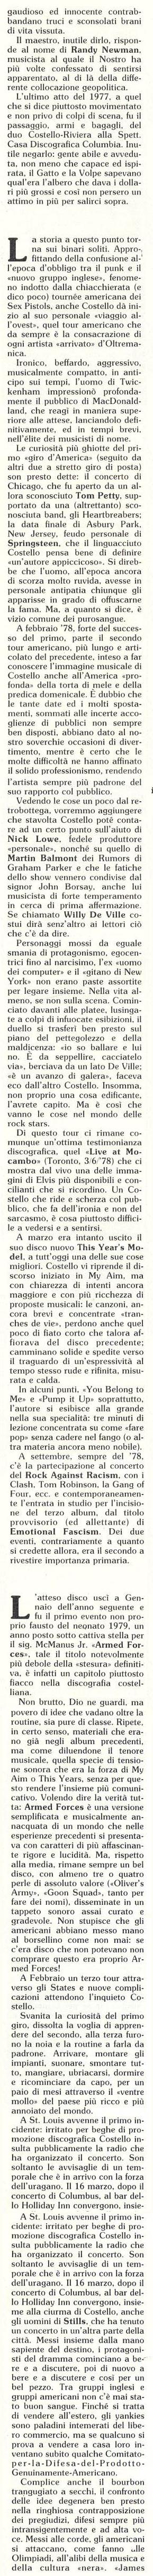 1983-01-00 Il Mucchio Selvaggio page 07 composite.jpg